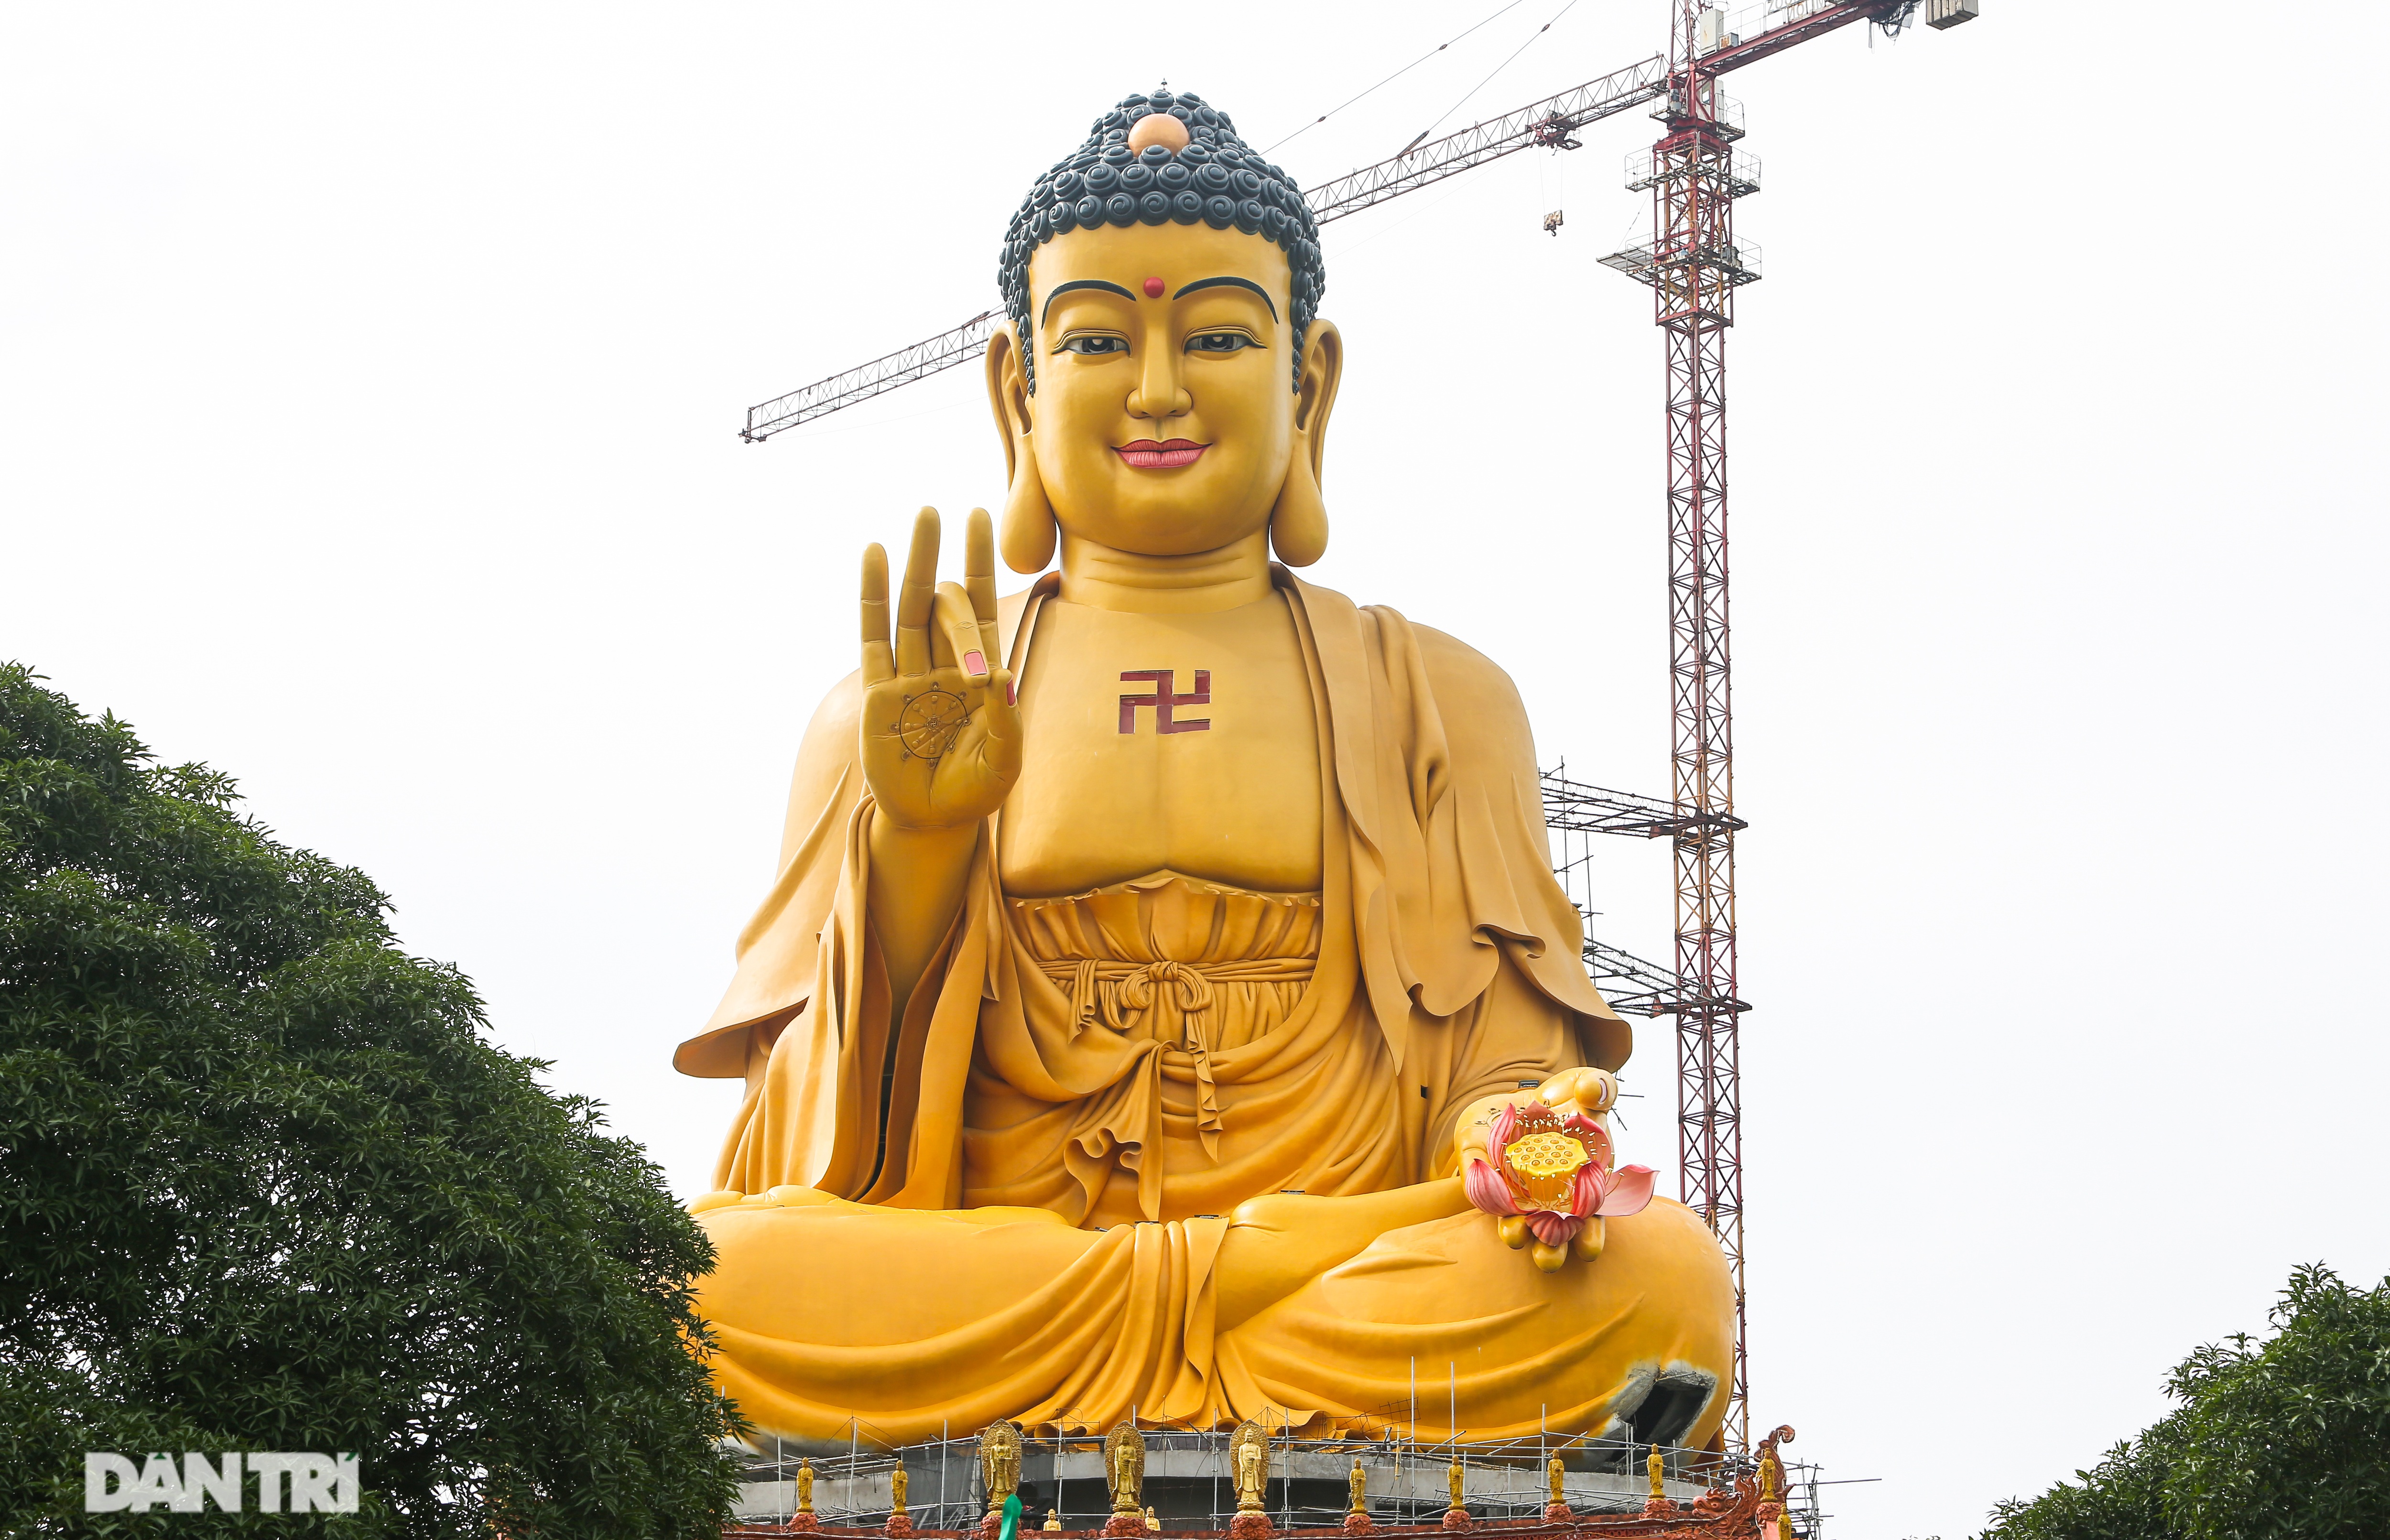 Phó tượng Phật lớn nhất Đông Nam Á là một tác phẩm nghệ thuật vĩ đại, đầy tình cảm và tôn vinh đức Phật. Đừng bỏ lỡ cơ hội chiêm ngưỡng tác phẩm ấn tượng này, nơi bạn có thể tìm thấy sự bình yên và tinh tấn của tôn giáo Phật giáo.